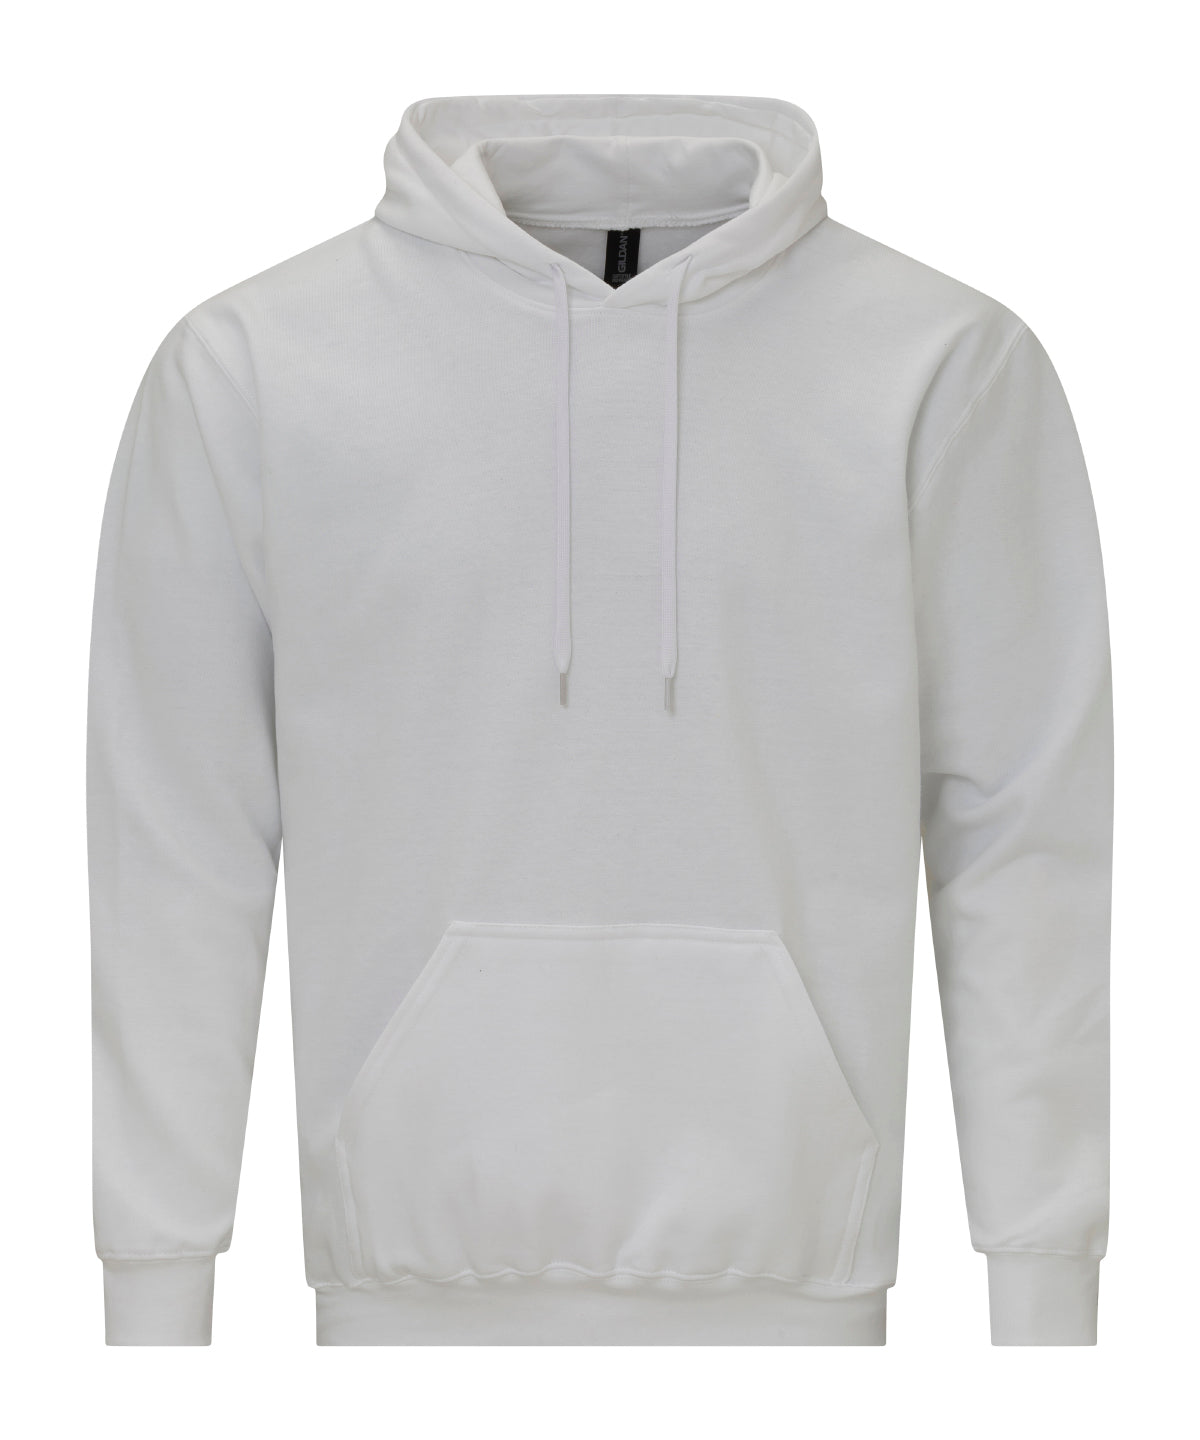 Personalised Hoodies - Dark Grey Gildan Softstyle™ midweight fleece adult hoodie